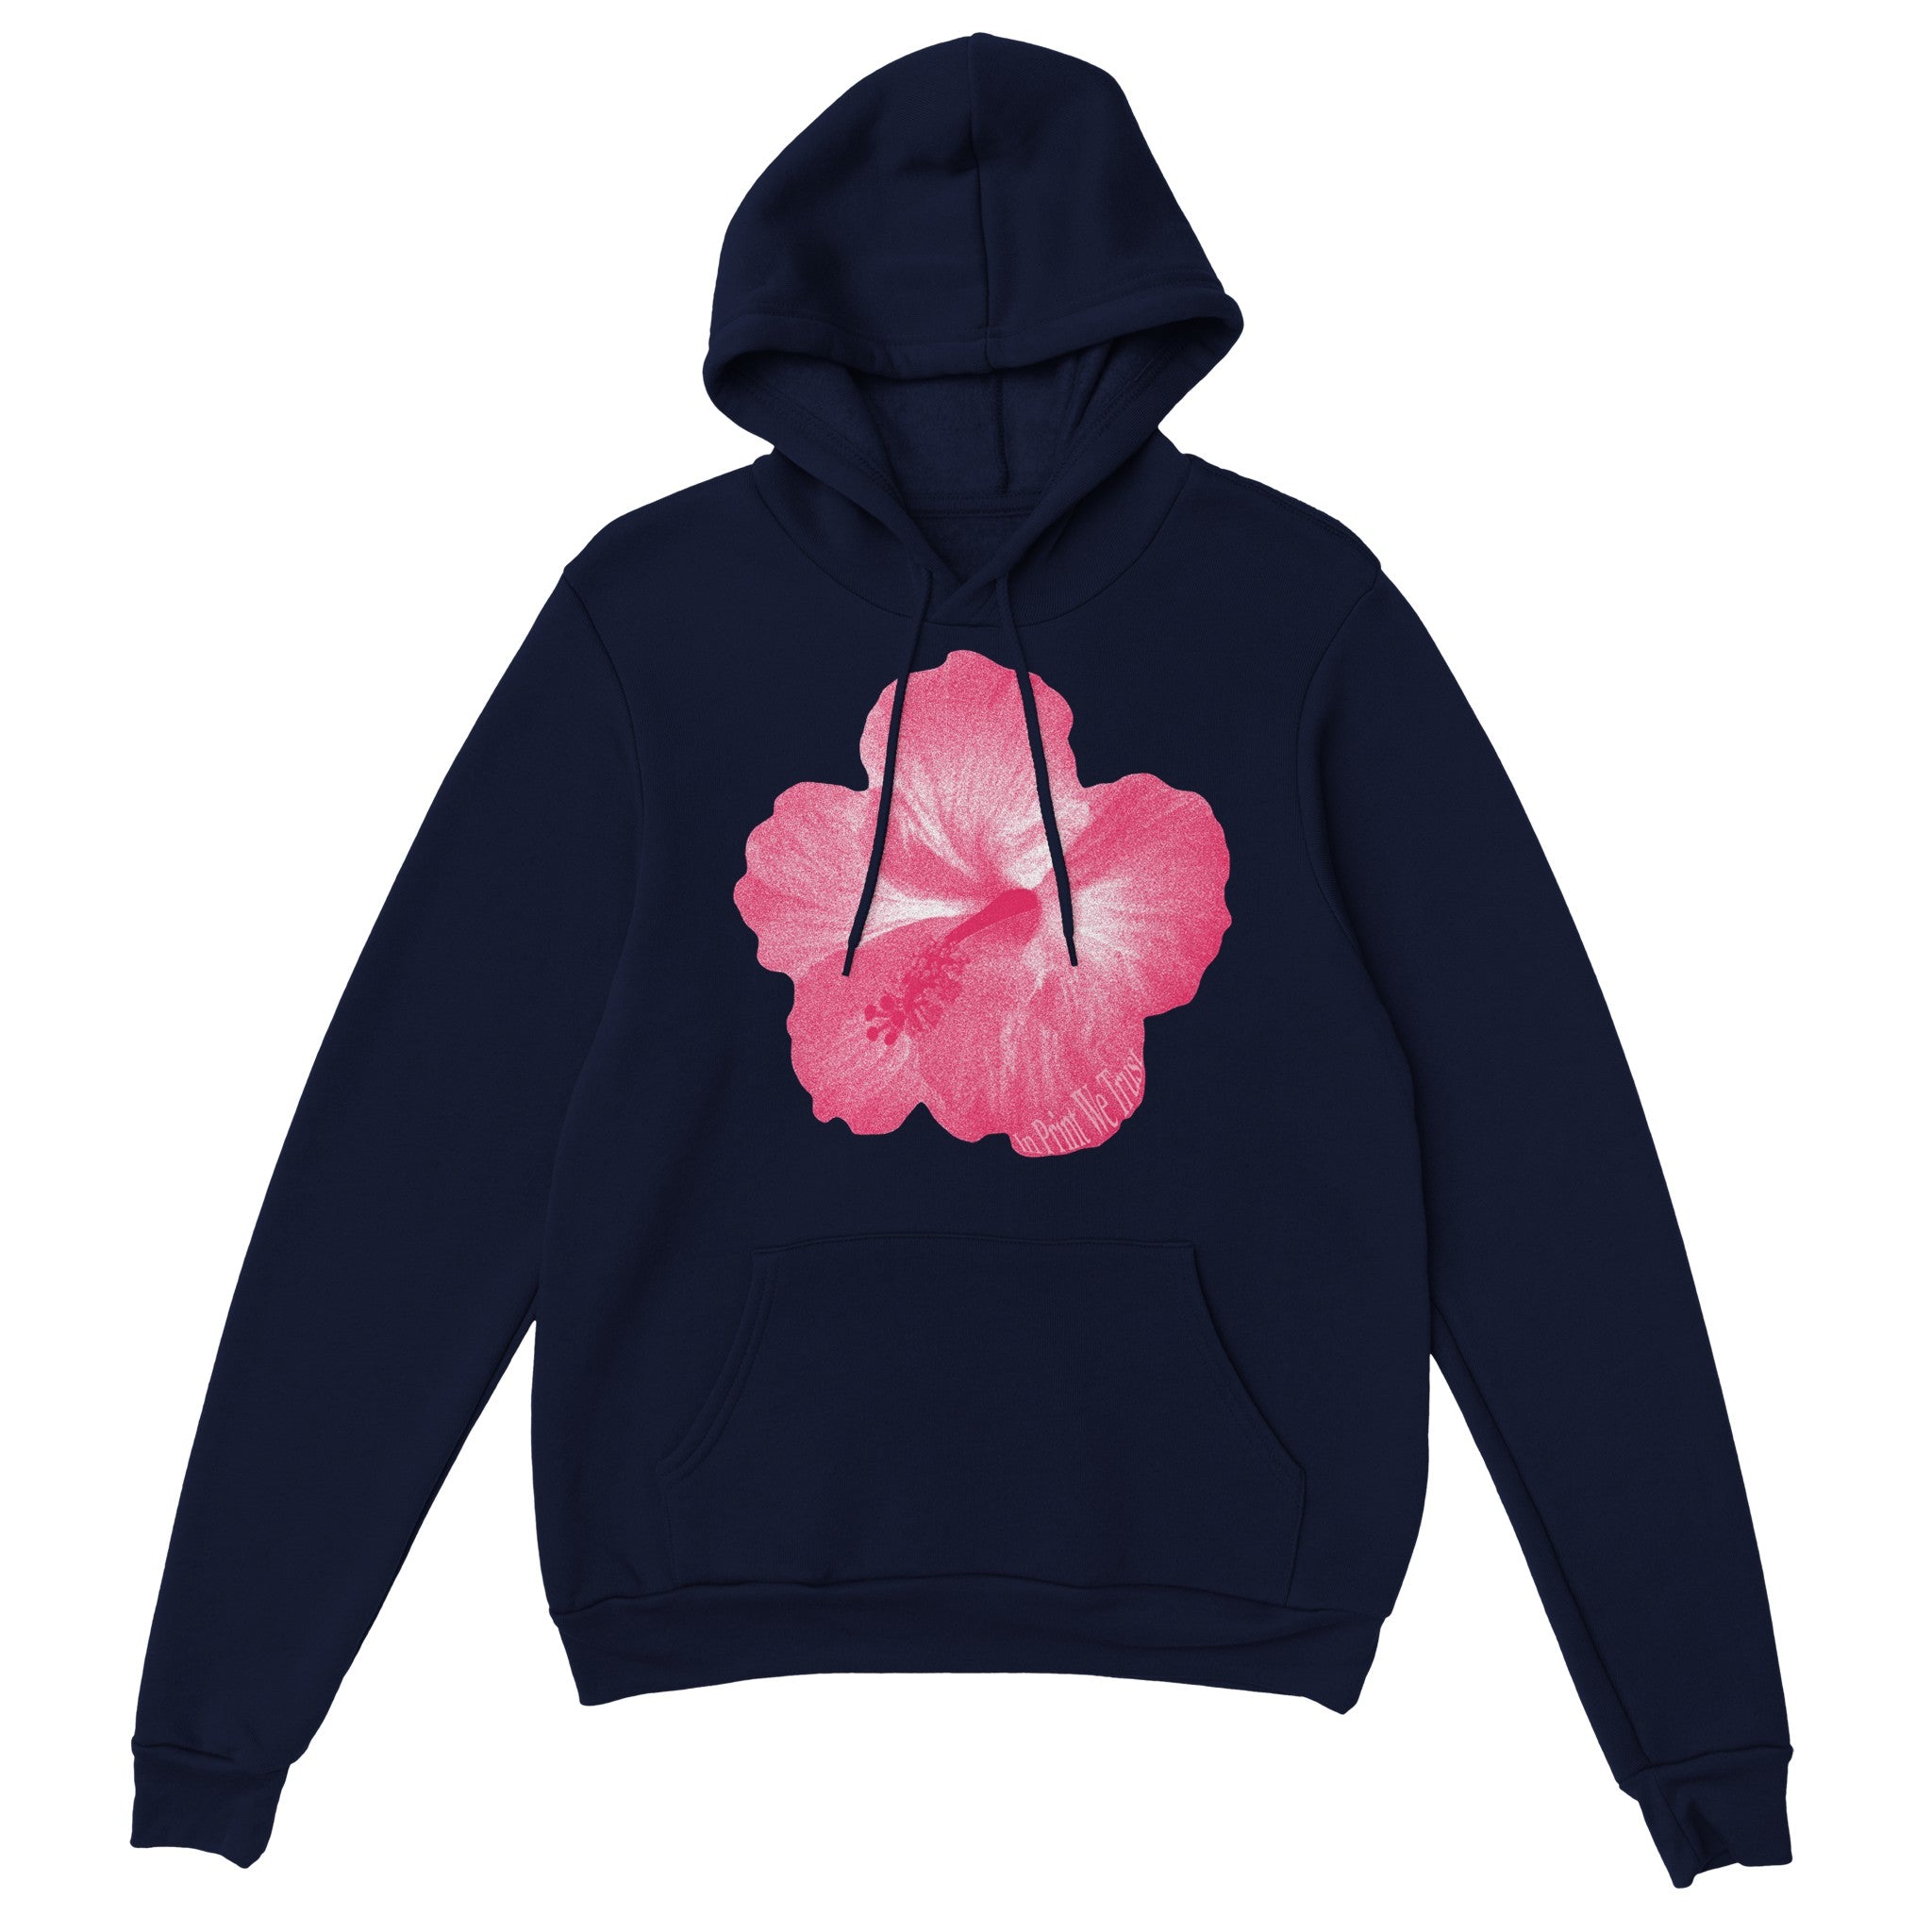 'Hibiscus' hoodie - In Print We Trust